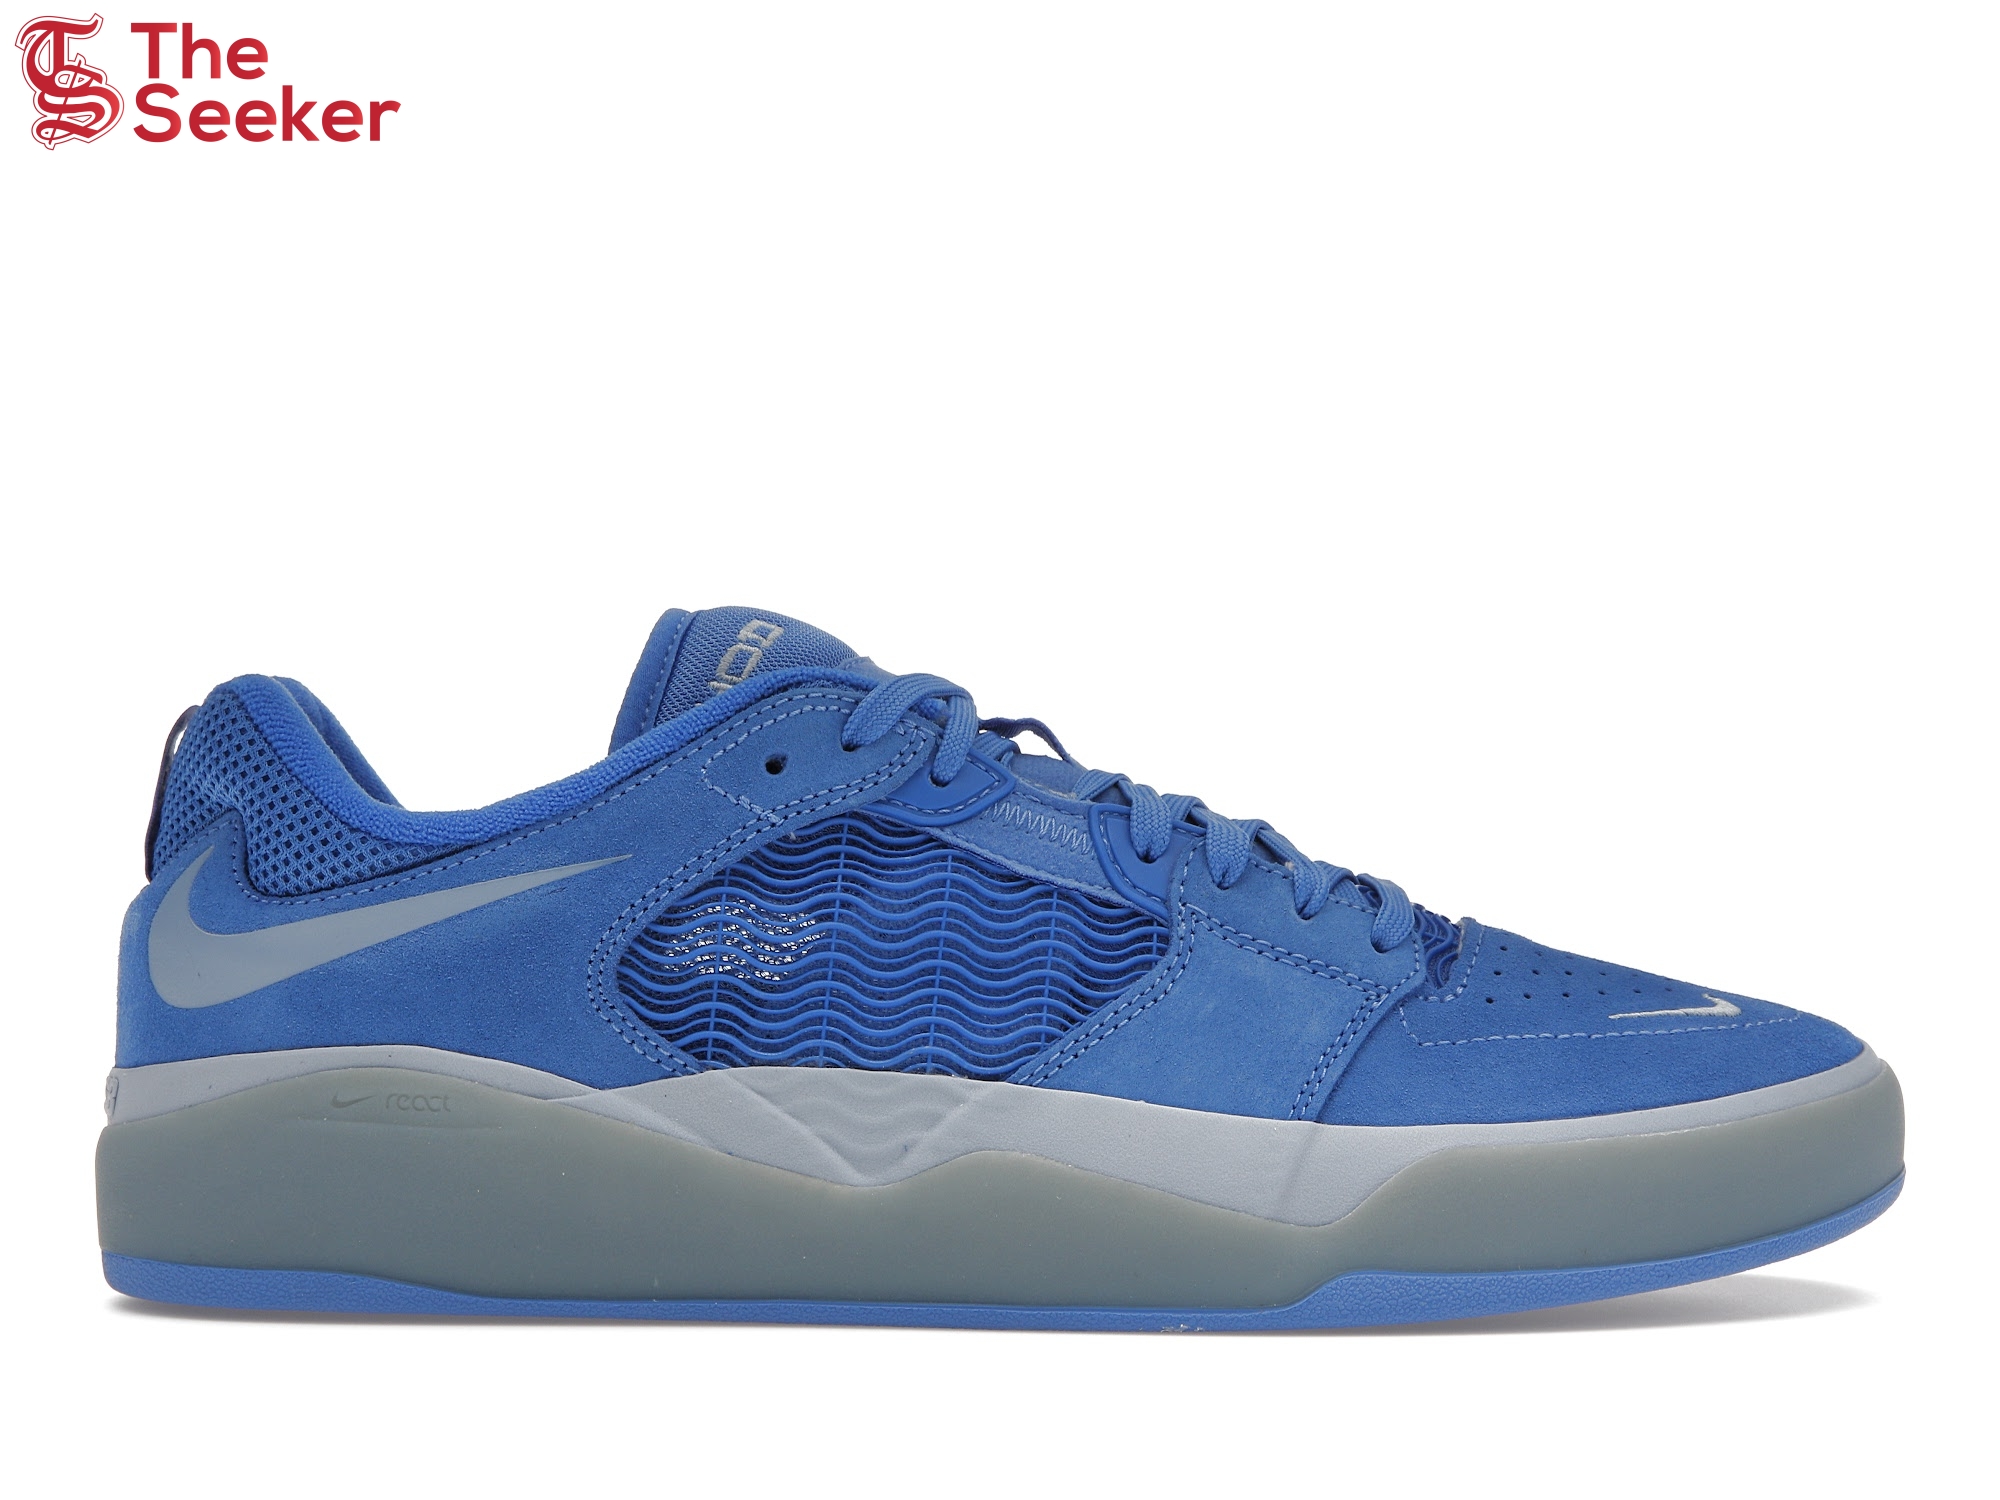 Nike SB Ishod Wair Pacific Blue